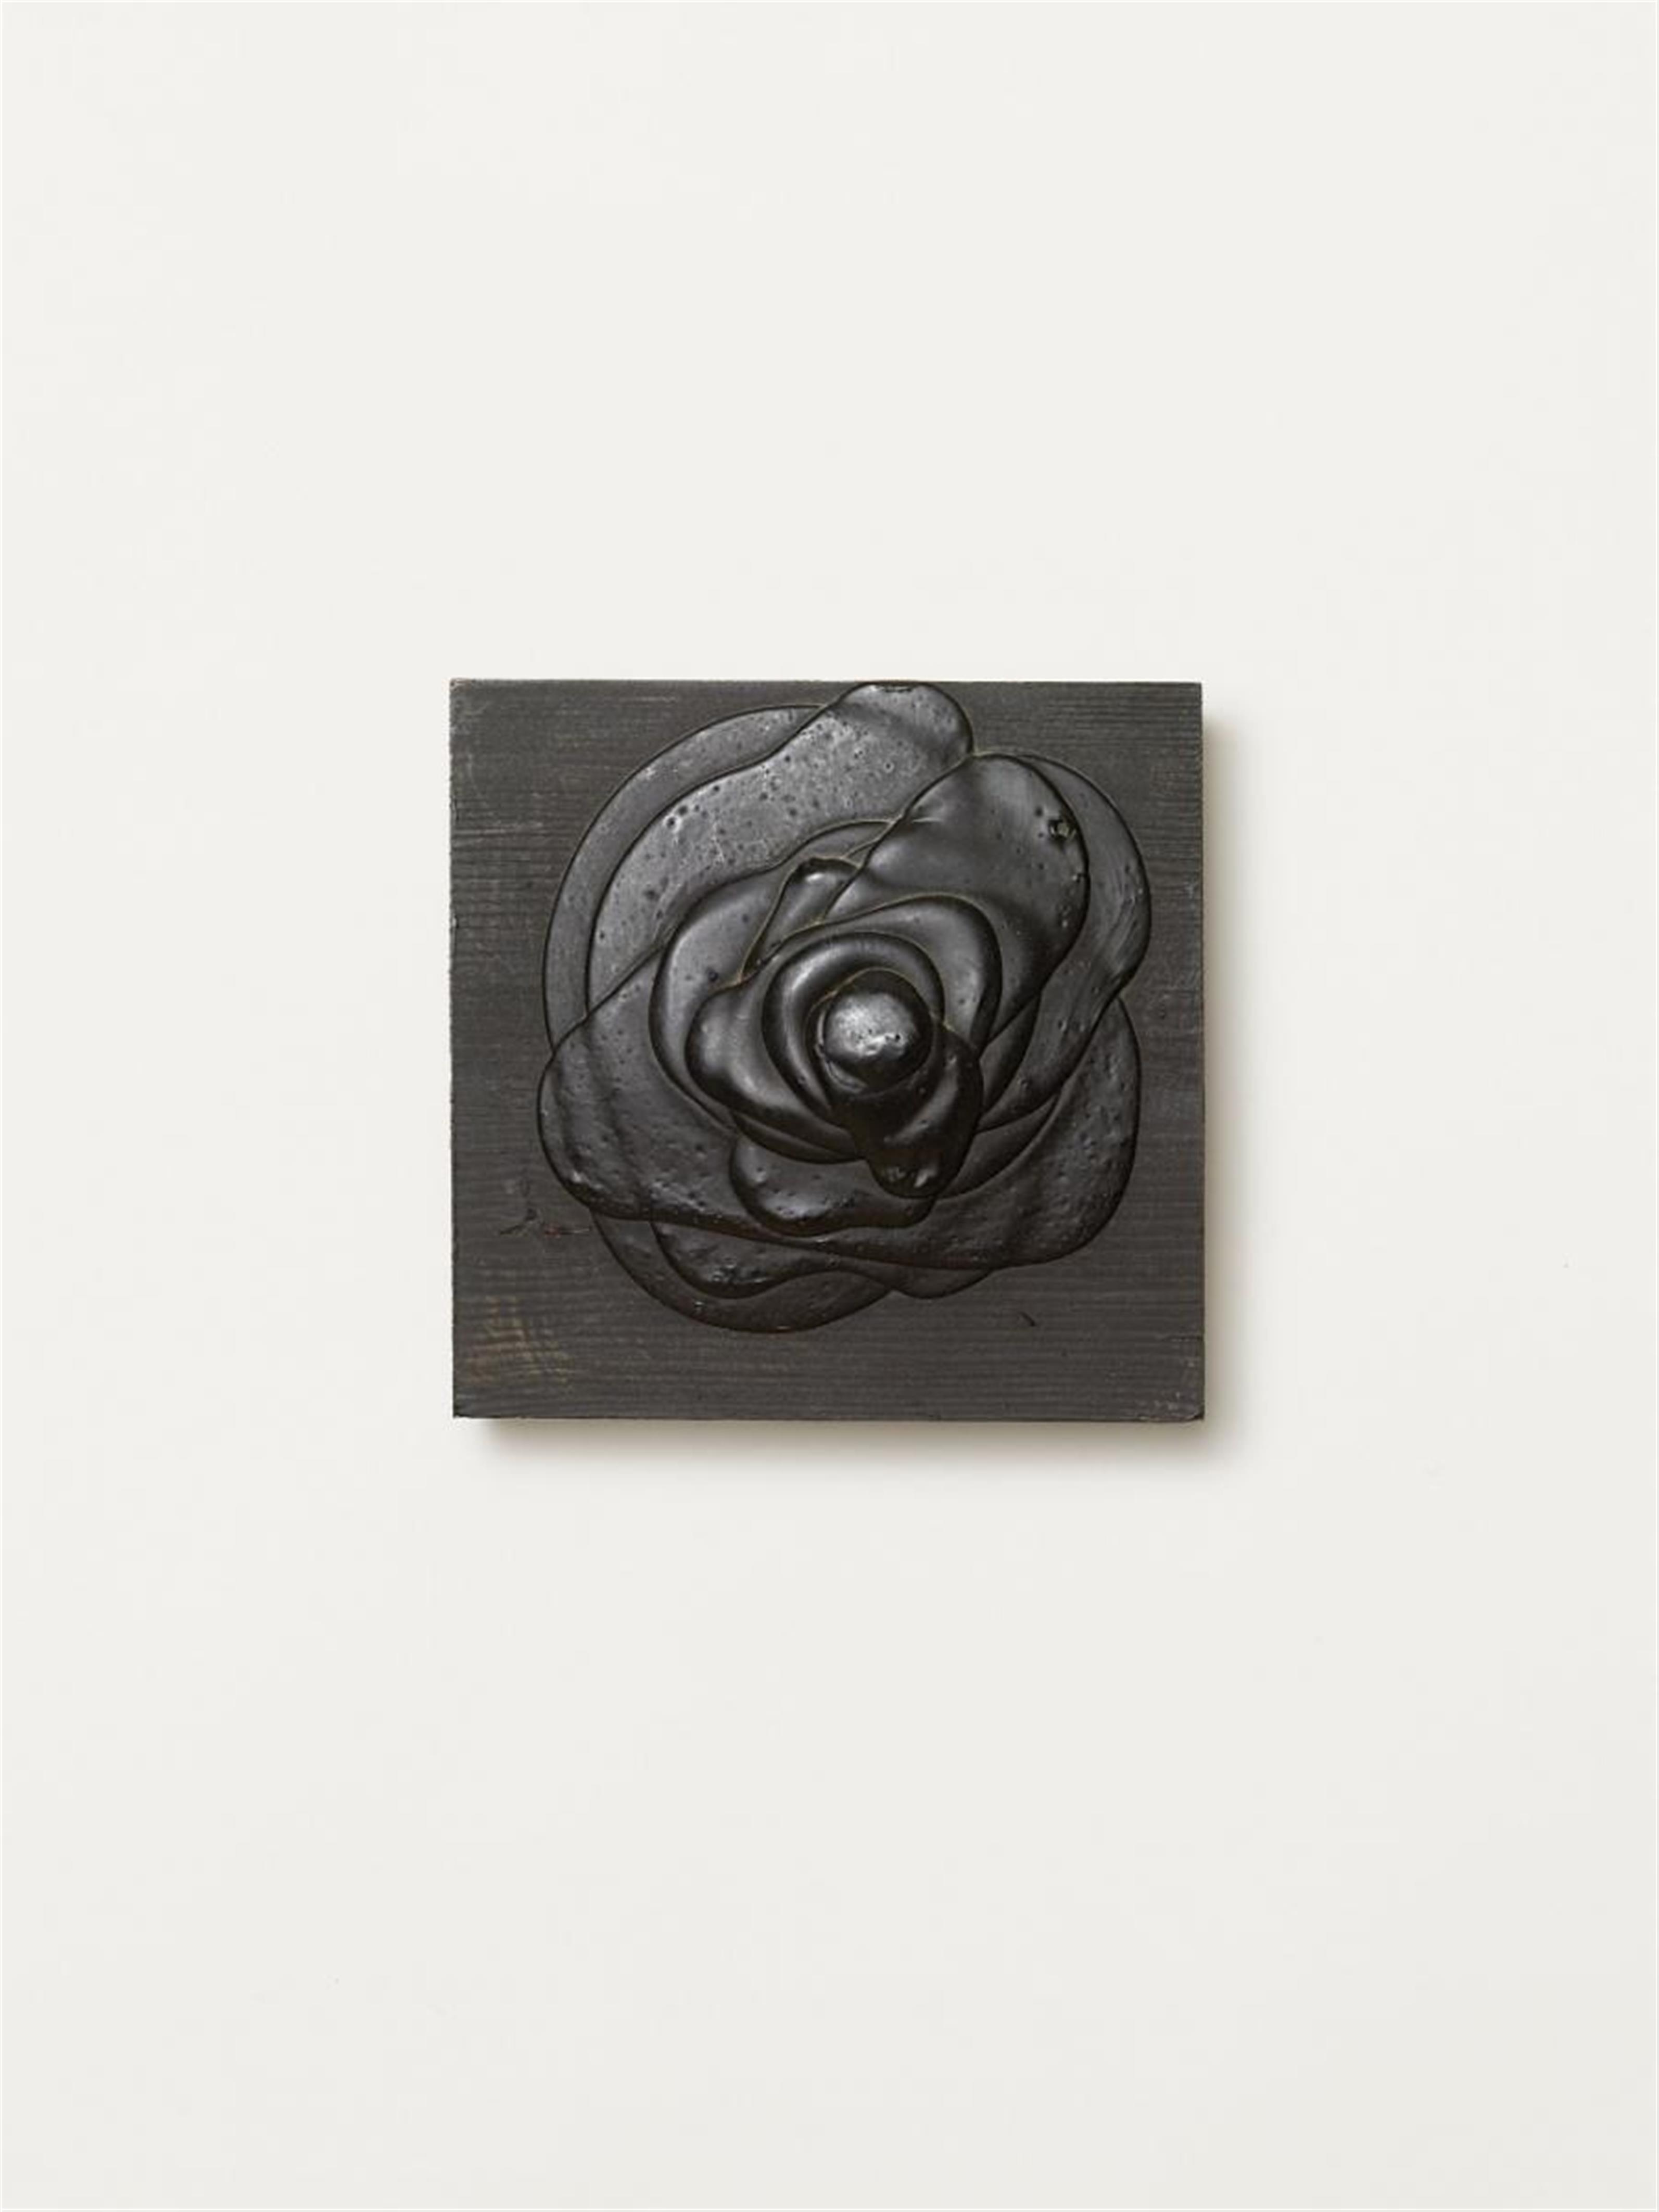 Dieter Roth - Schwarze Rose (black rose) - image-1